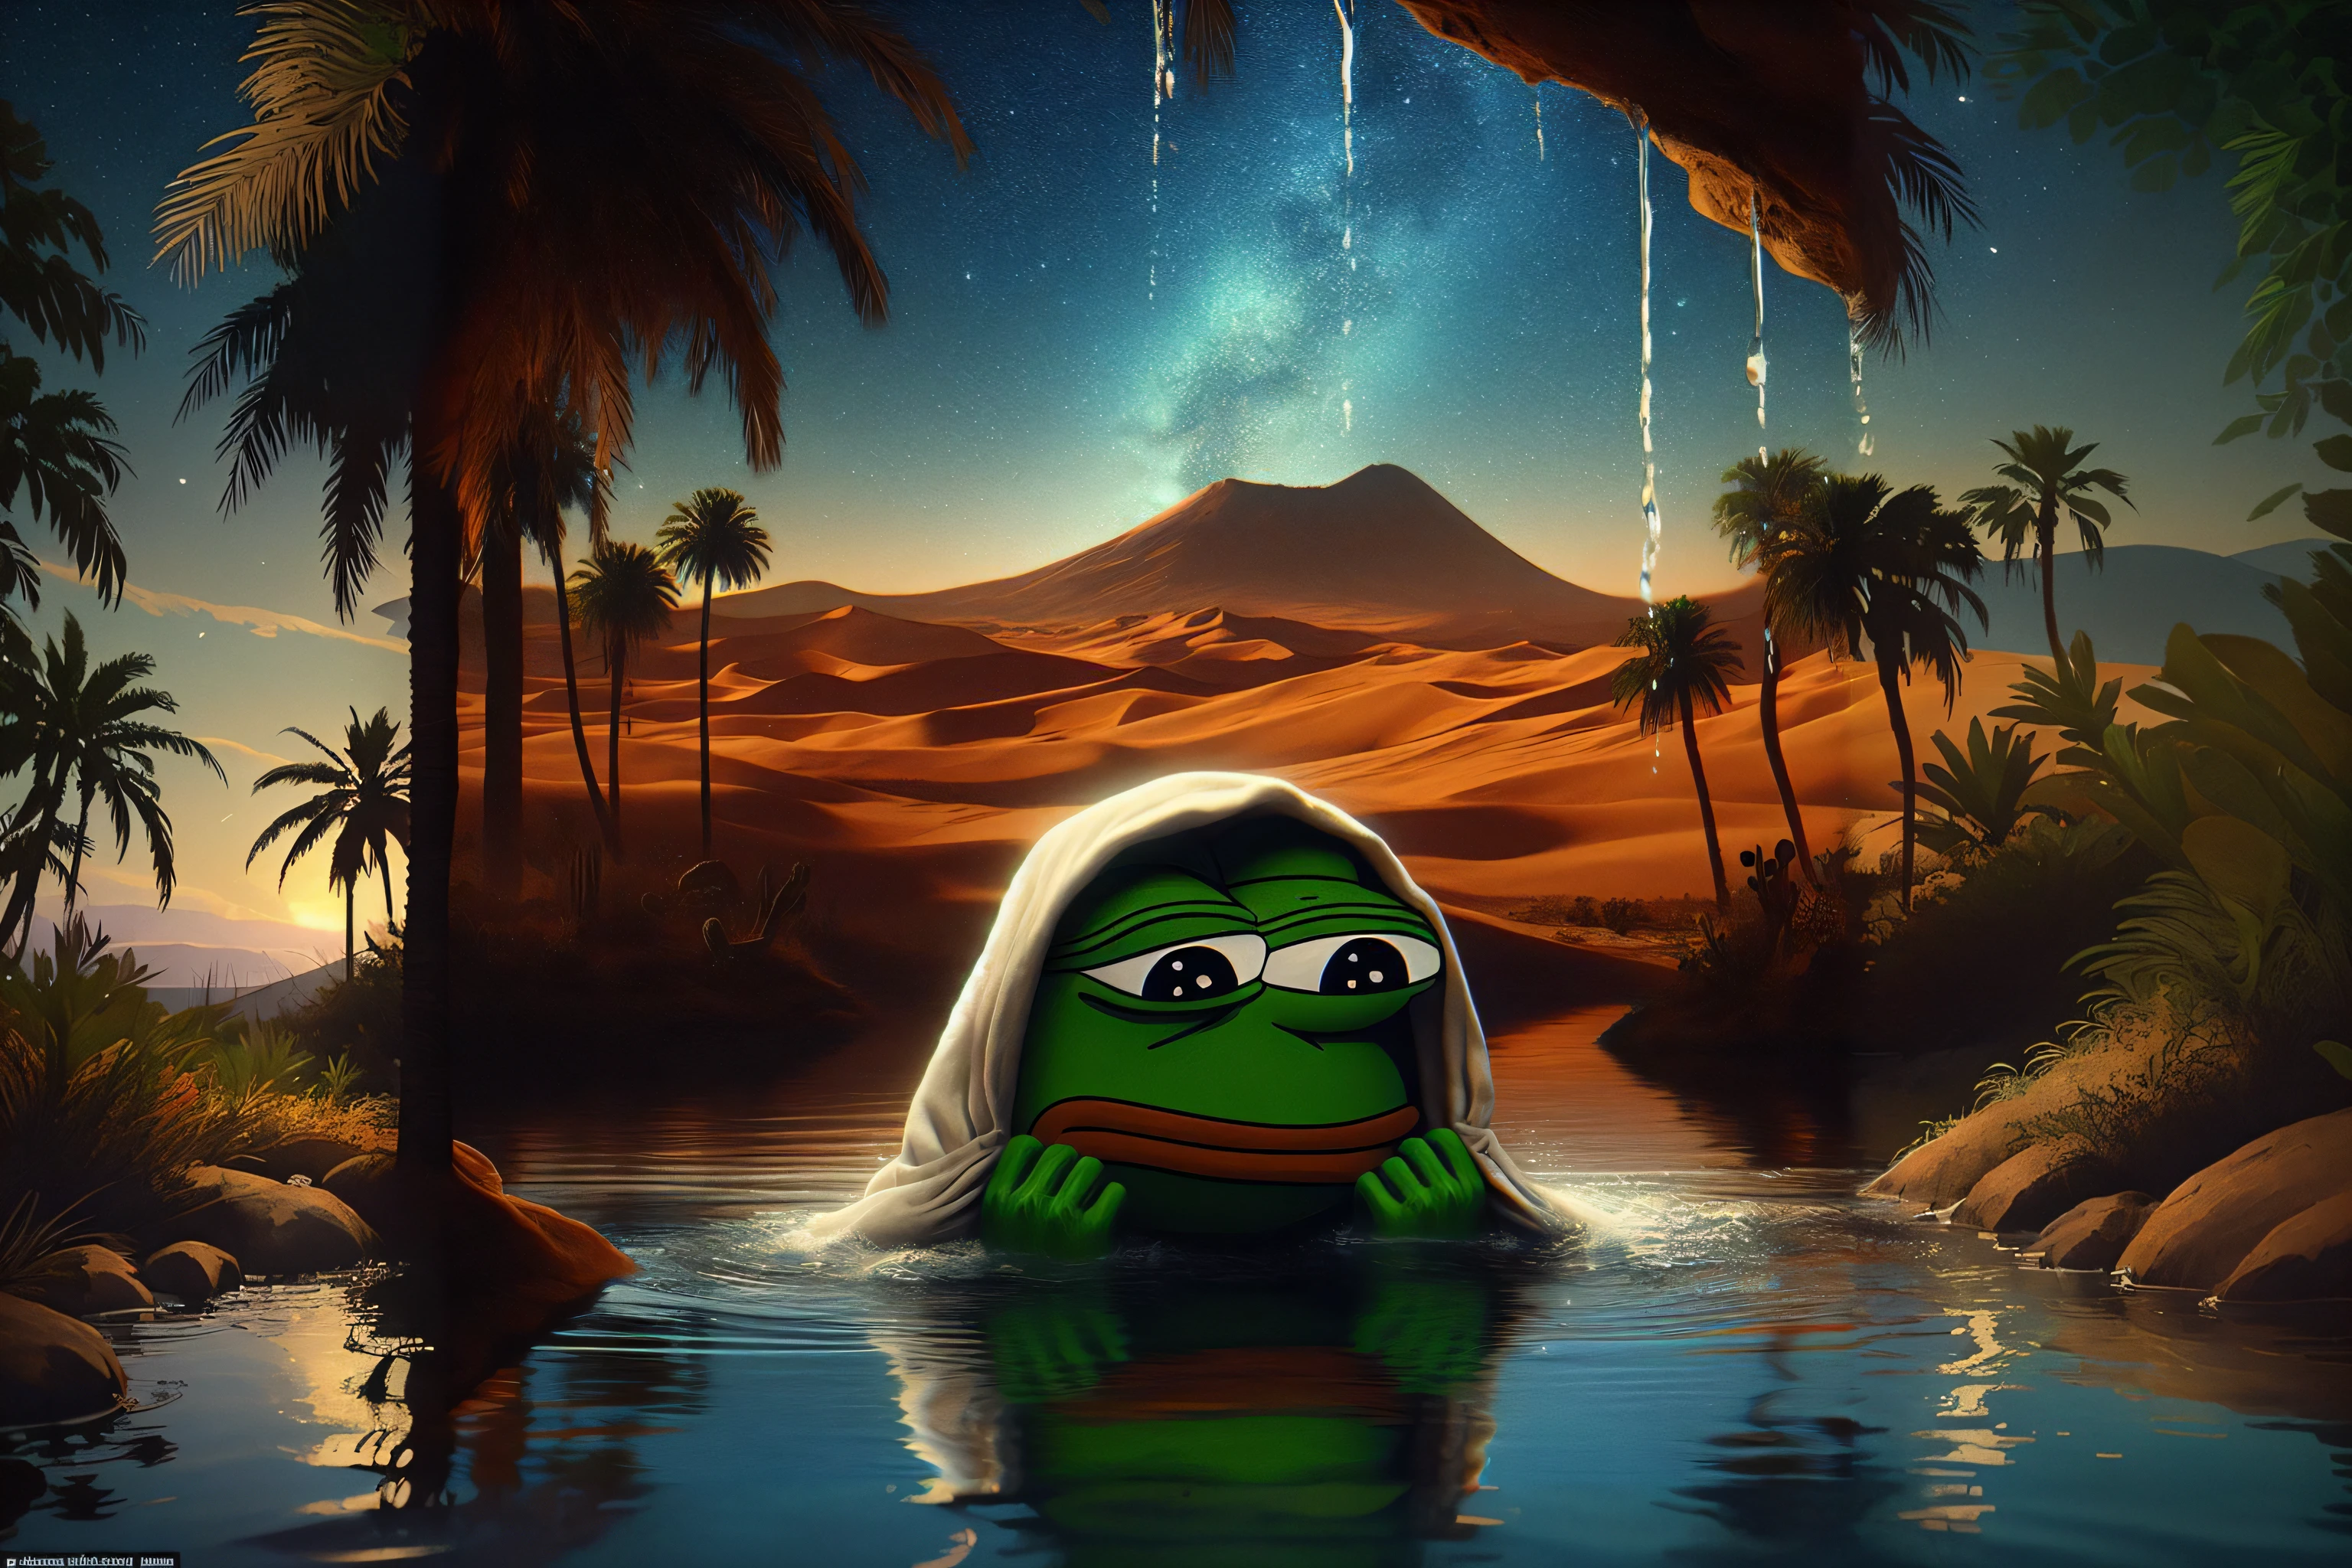 完美的數位藝術: 在綠洲用水洗臉的 Sadpepe meme 青蛙在水中拍攝的照片. 新鮮馬甲, 悲傷的臉. 夜間詳細的稀樹草原背景, 沙漠, 棕櫚樹, 平靜的水. 4K超高清壁紙, 細節無可挑剔的傑作, 最佳角度. 完美的藝術